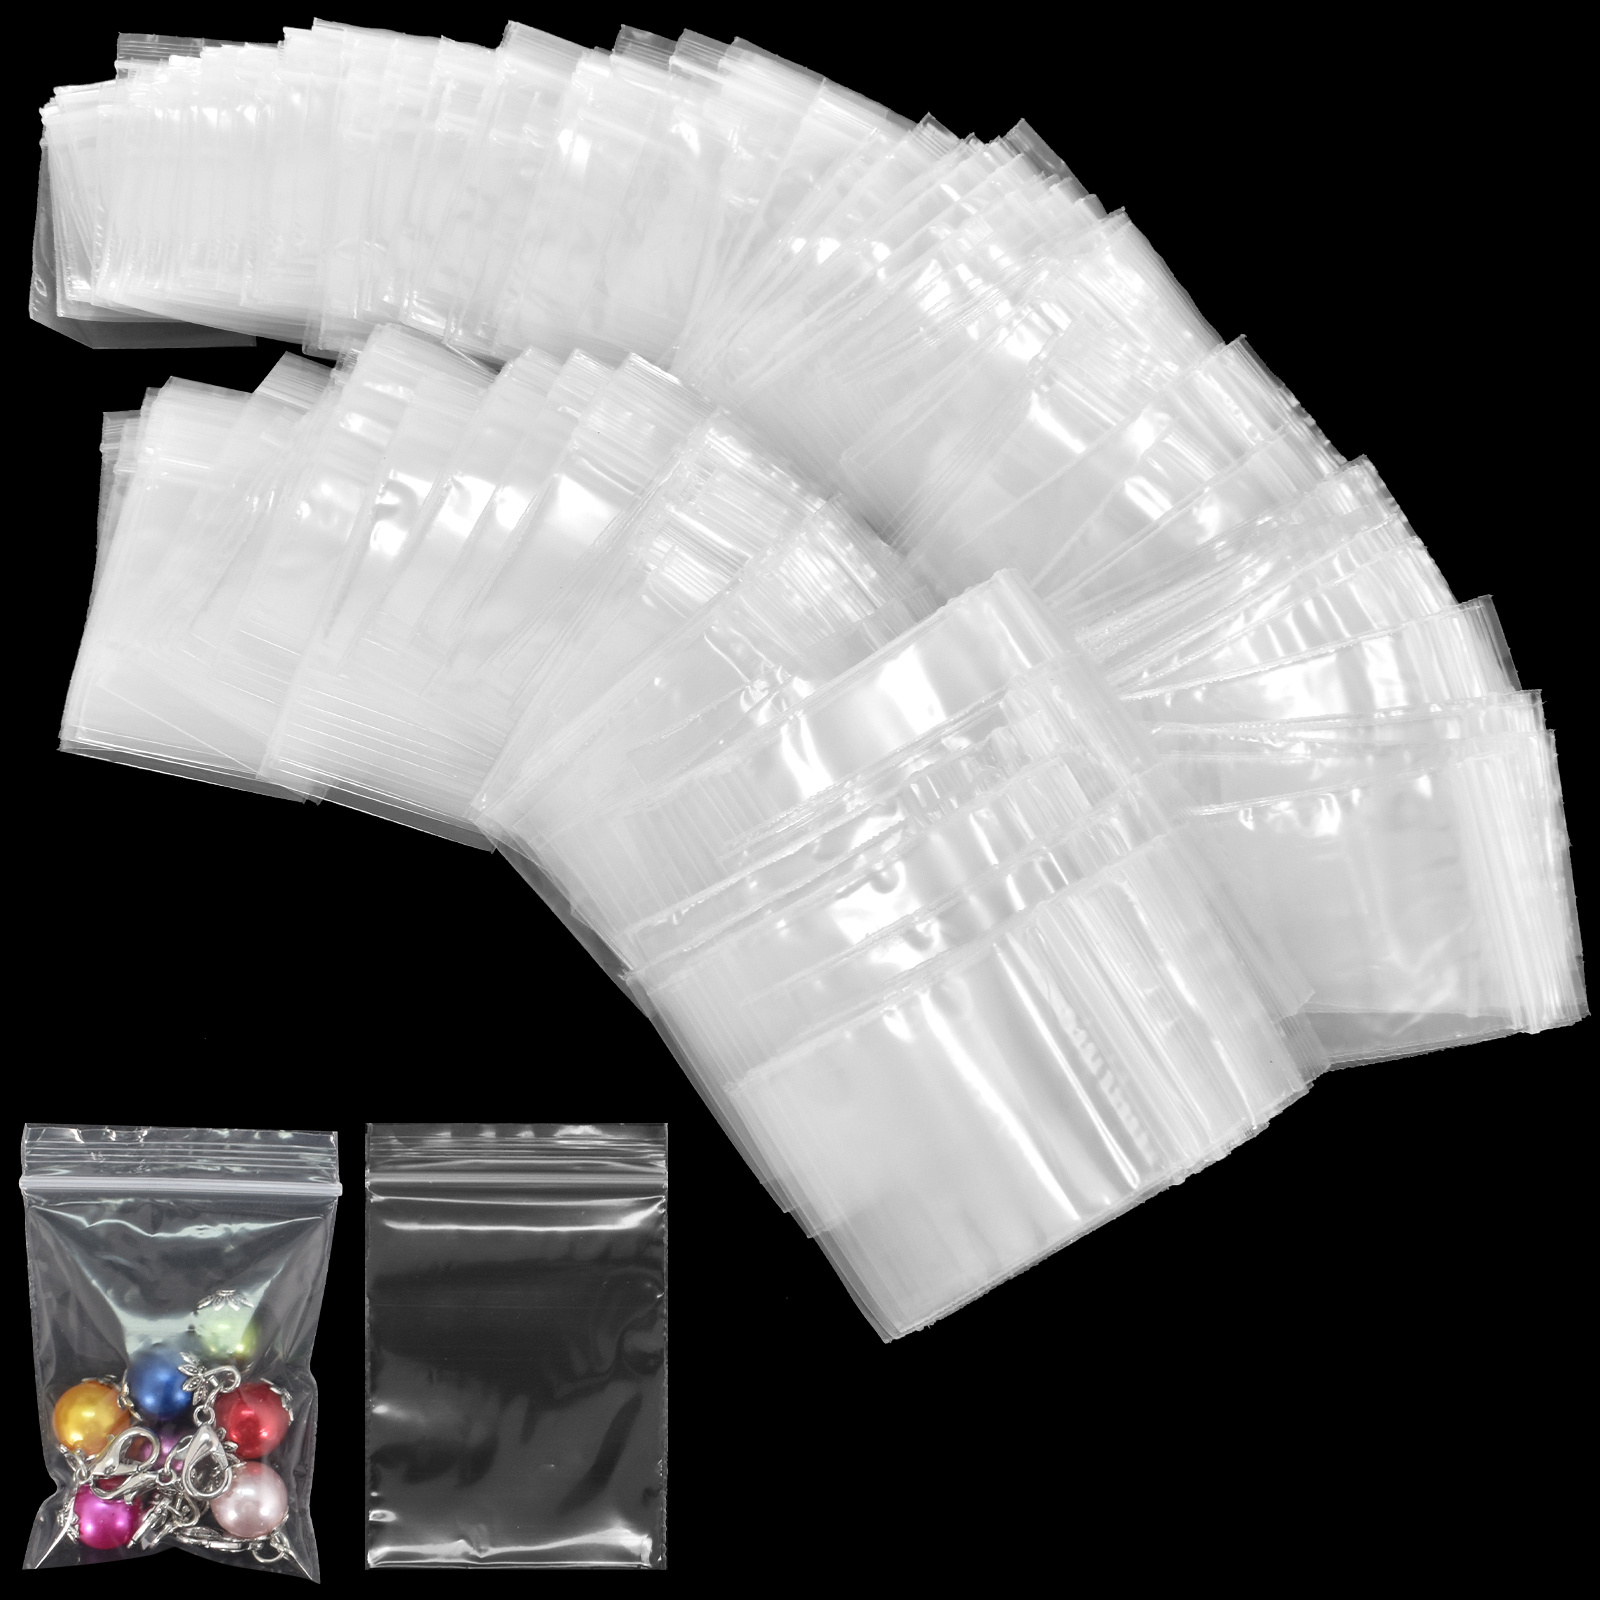 Small Zip Lock Baggies Plastic Packaging Bags Zipper Bag Self Adhesive Bag  Small Storage Bags Home Storage 1000/100/20 Pcs